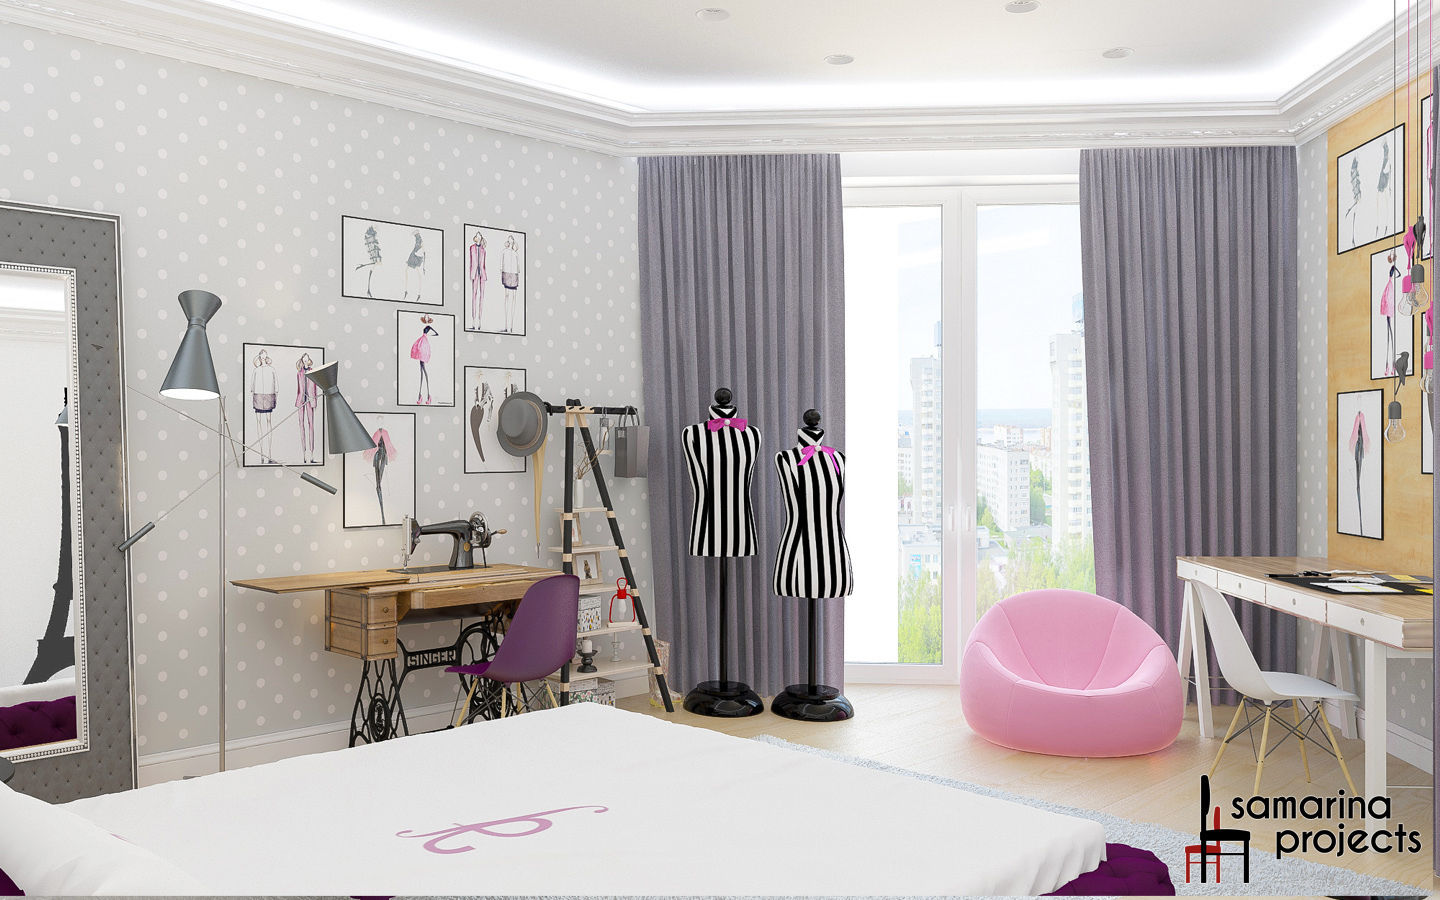 Дизайн квартиры "Геометрия цвета", Samarina projects Samarina projects غرفة الاطفال